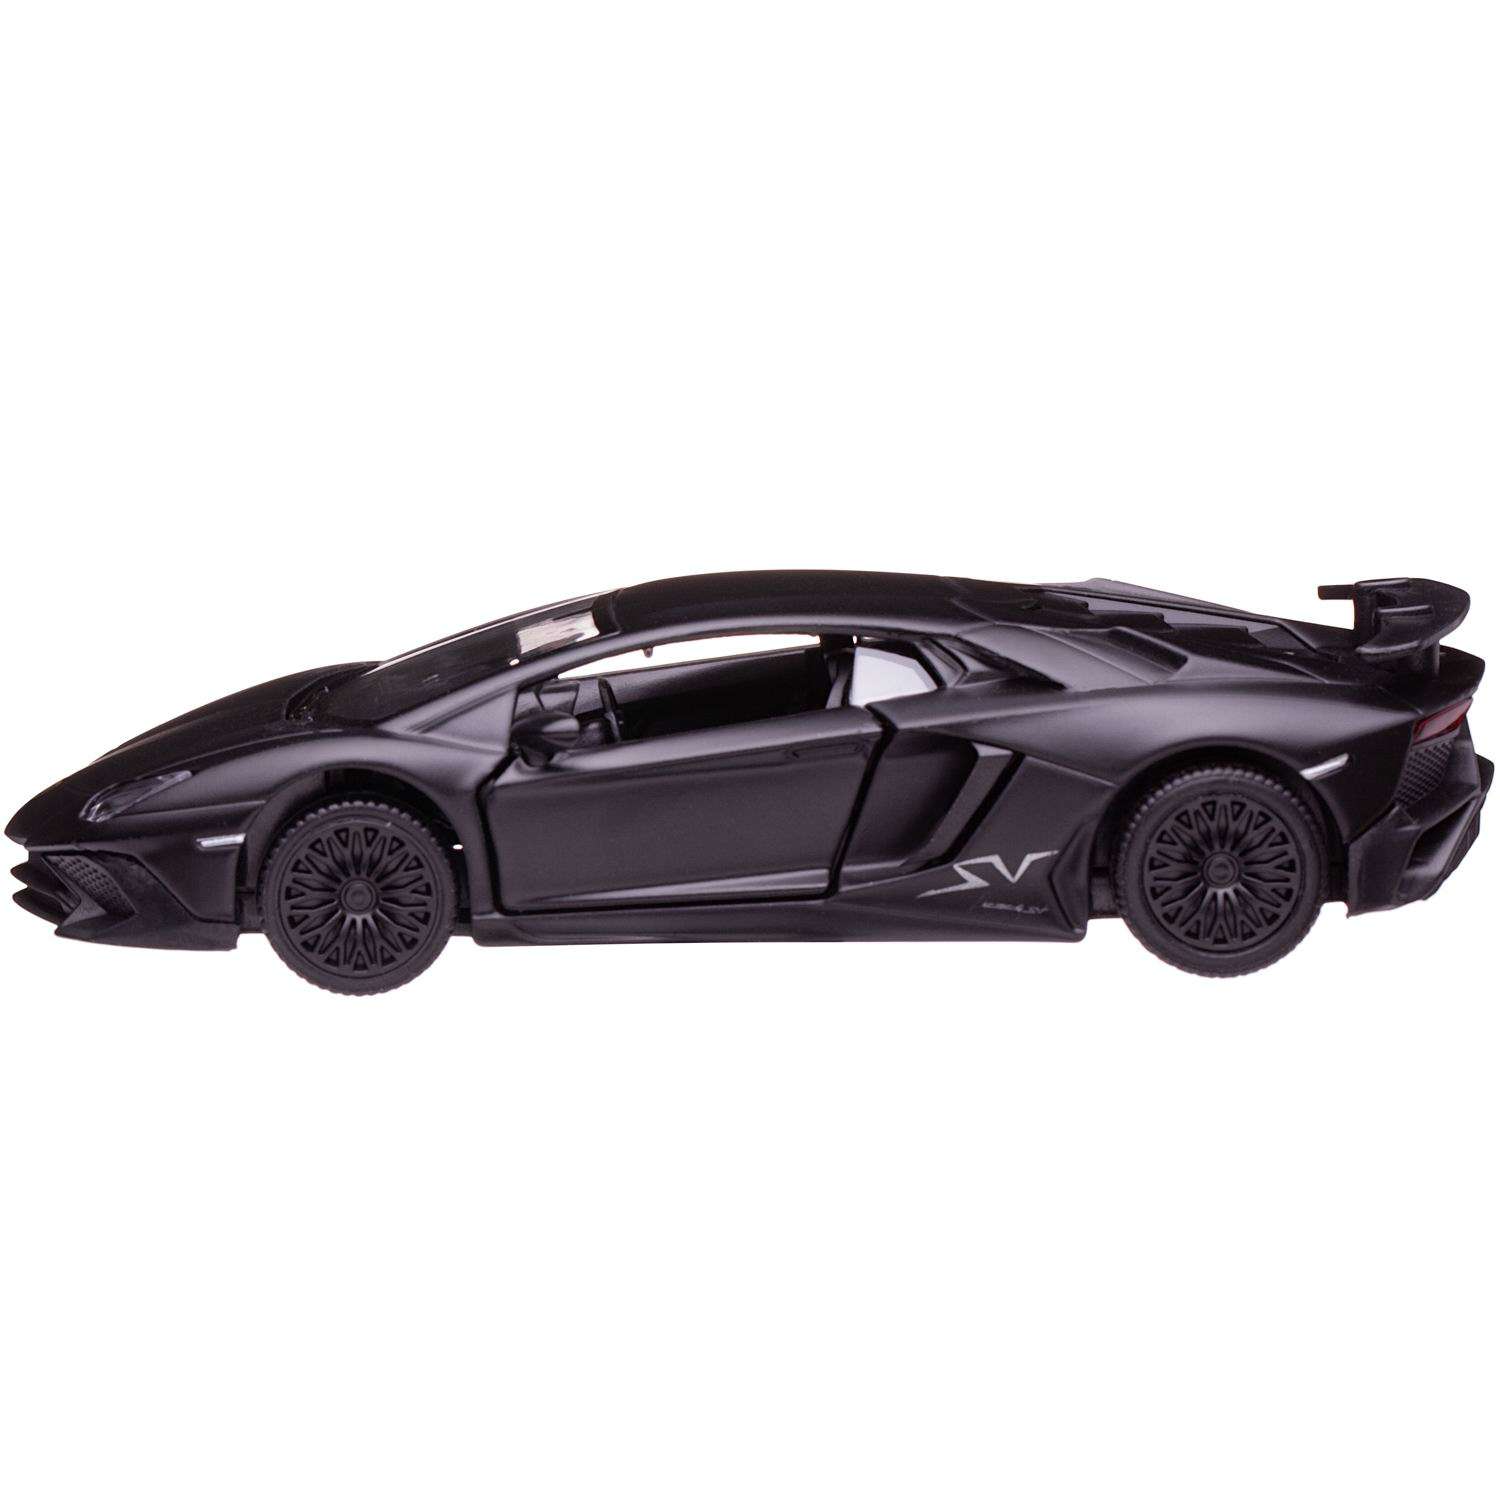 Машина металлическая Uni-Fortune Lamborghini Aventador Superveloce инерционная черная двери открываются 554990M - фото 1